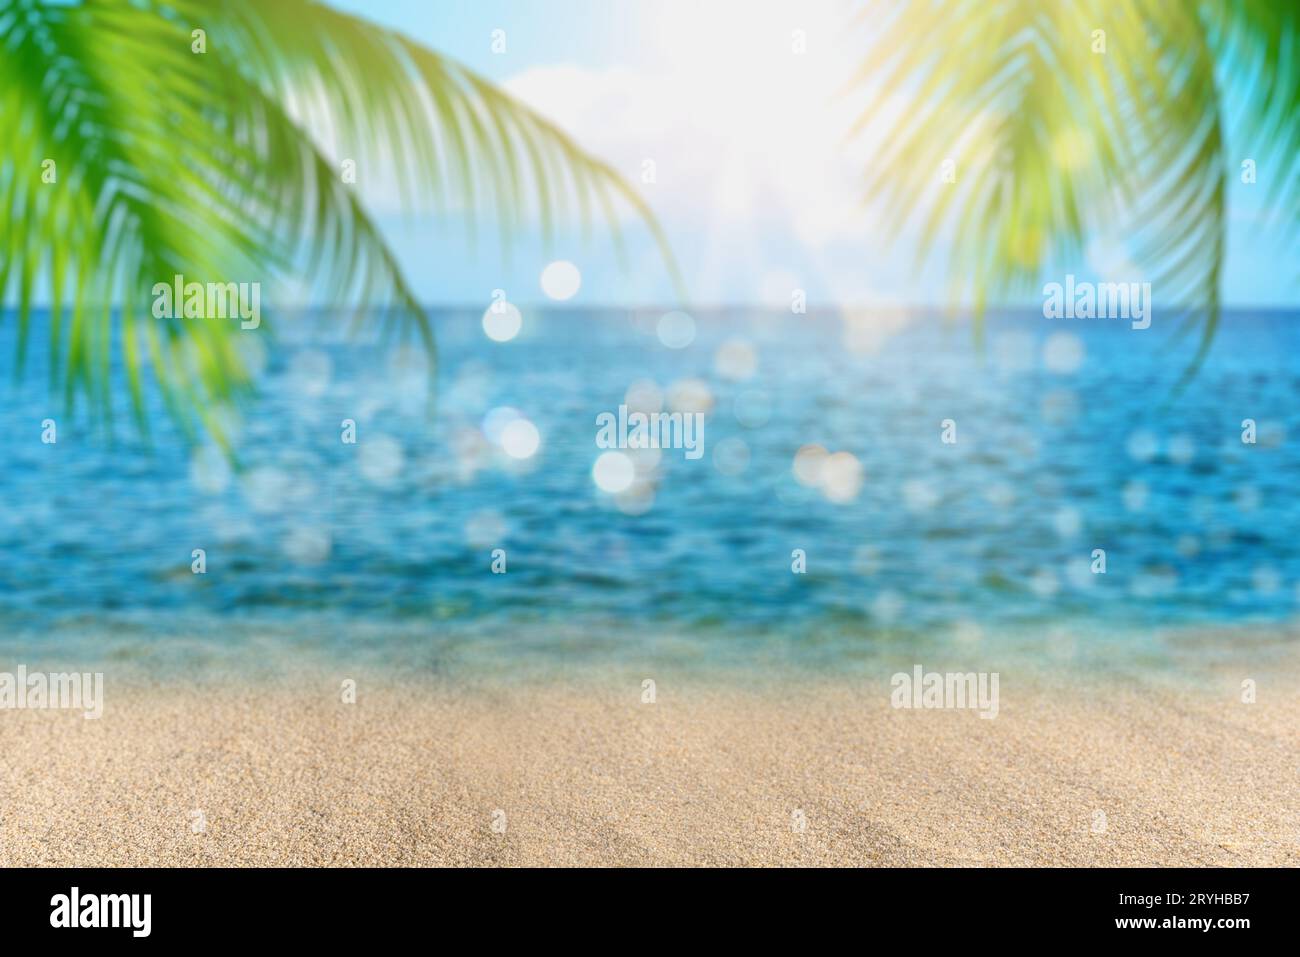 Unschärfe der wunderschönen Natur, grünes Palmenblatt am tropischen Strand, abstrakter Hintergrund. Stockfoto